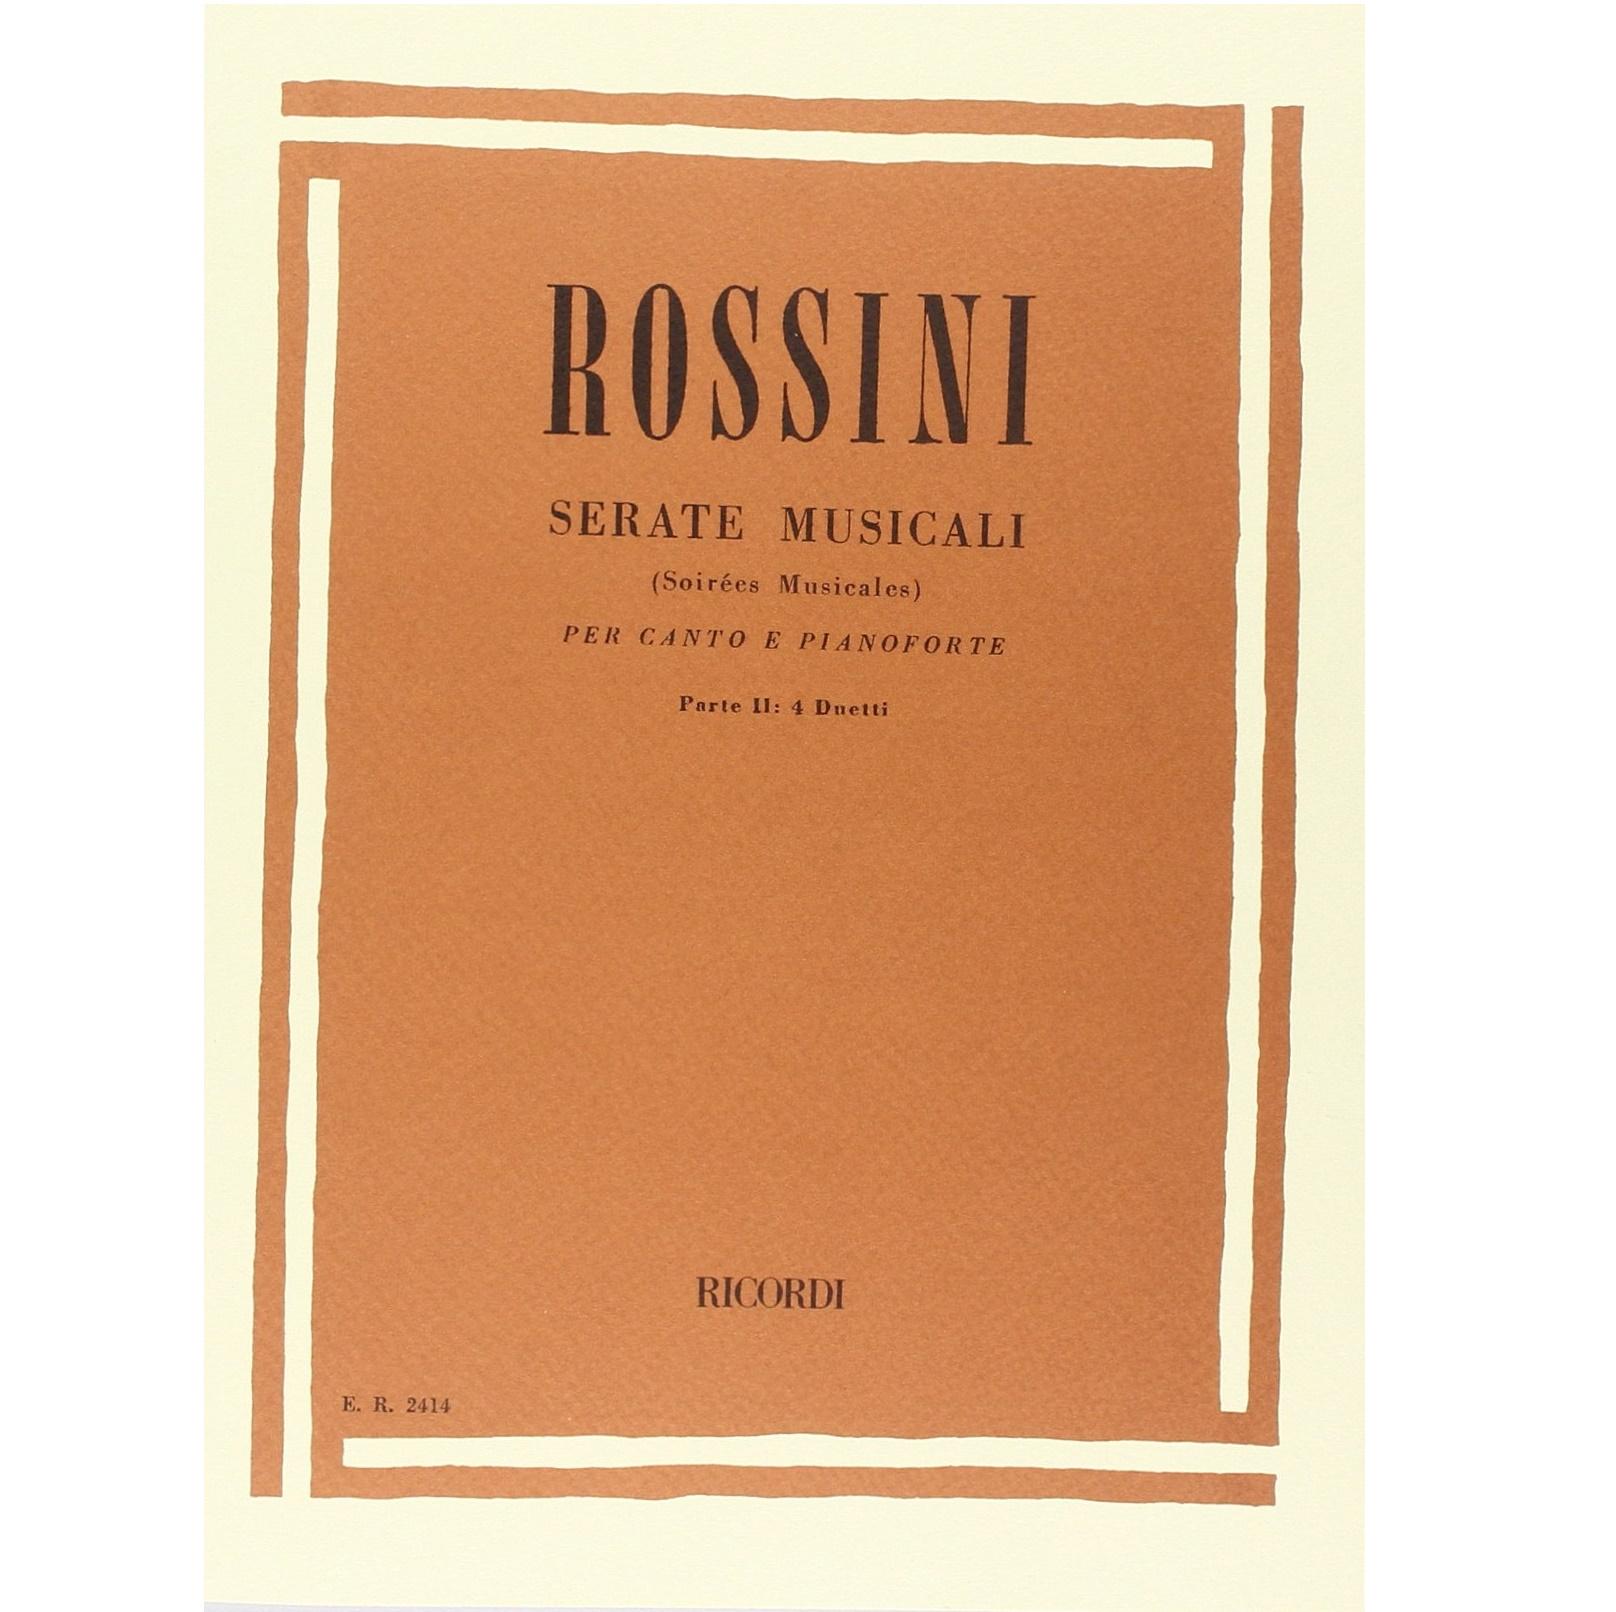 Rossini Serate Musicali per canto e pianoforte Parte II : 4 Duetti - Ricordi